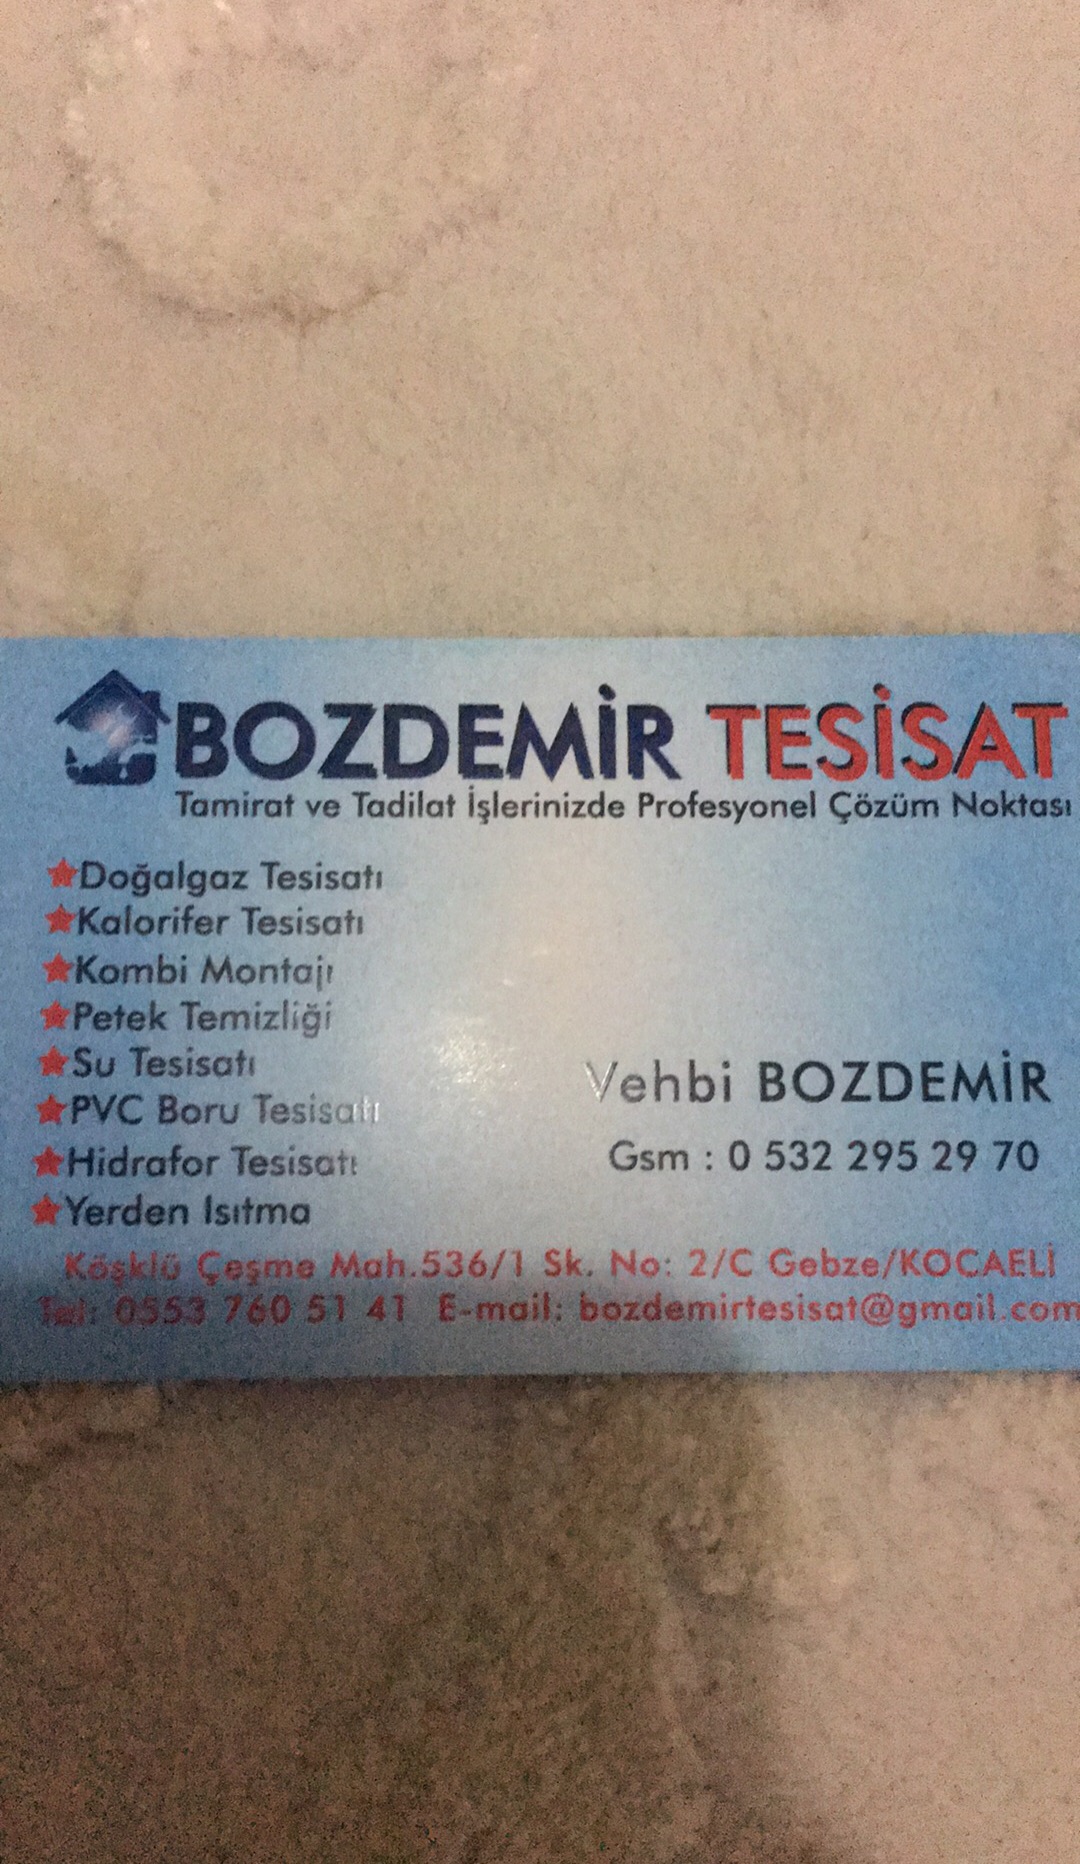 Vehbi Bozdemir 